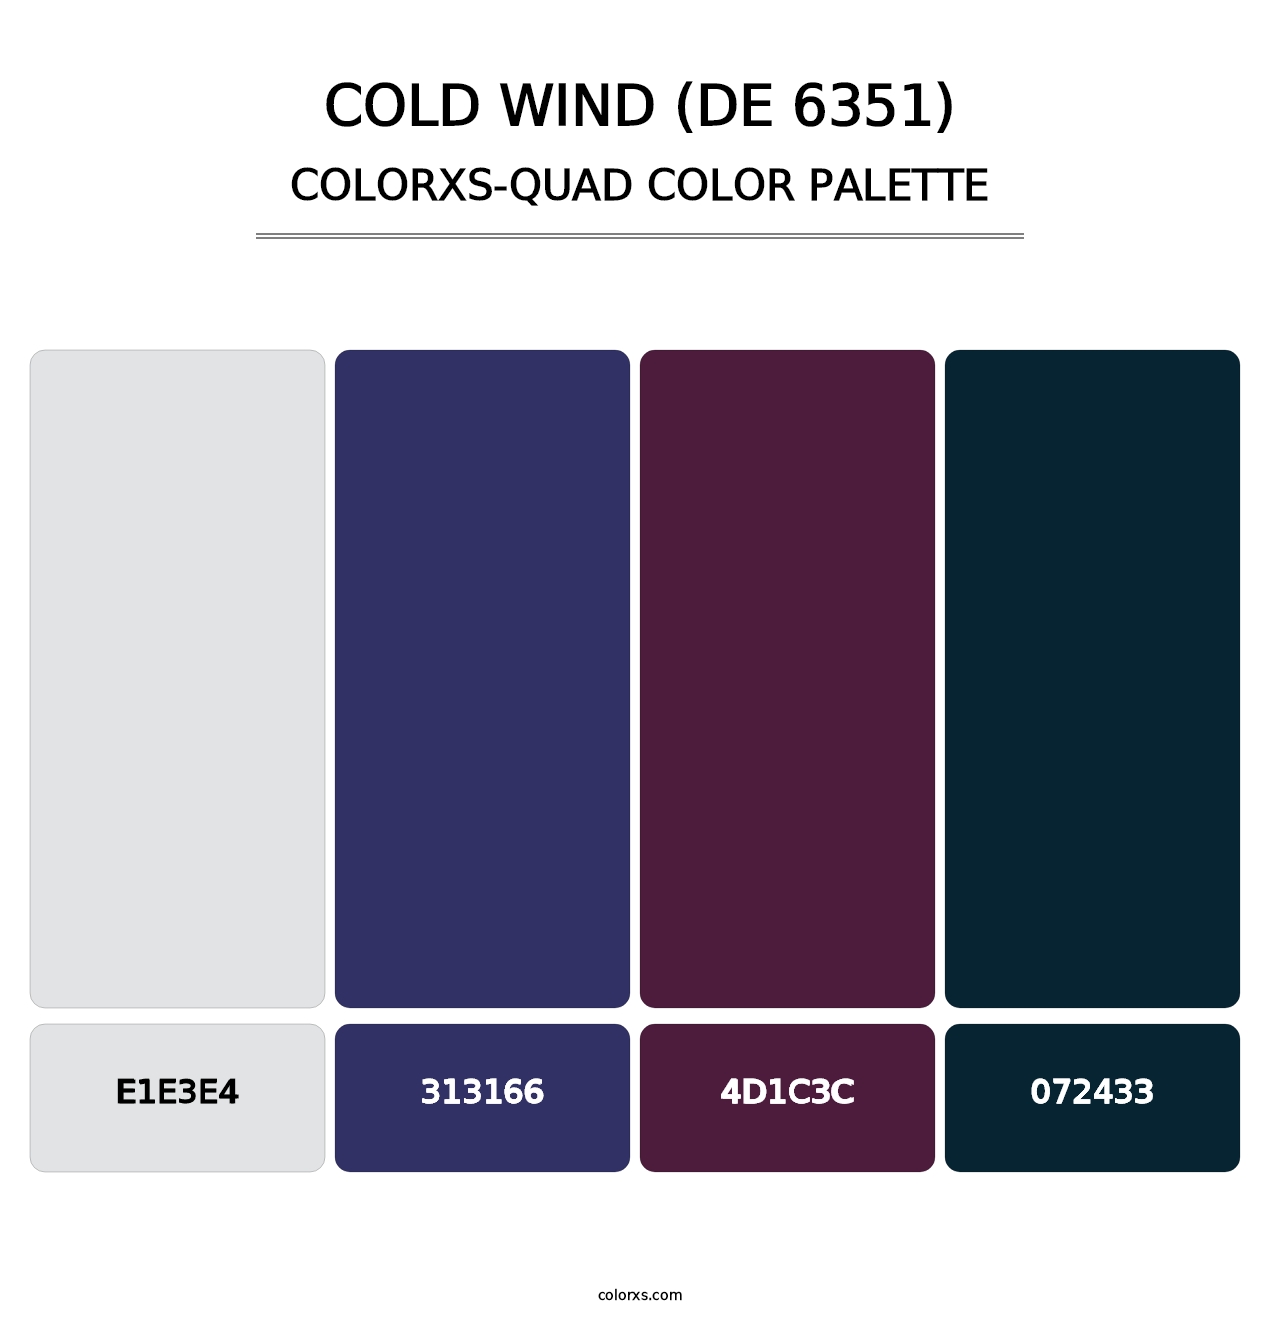 Cold Wind (DE 6351) - Colorxs Quad Palette